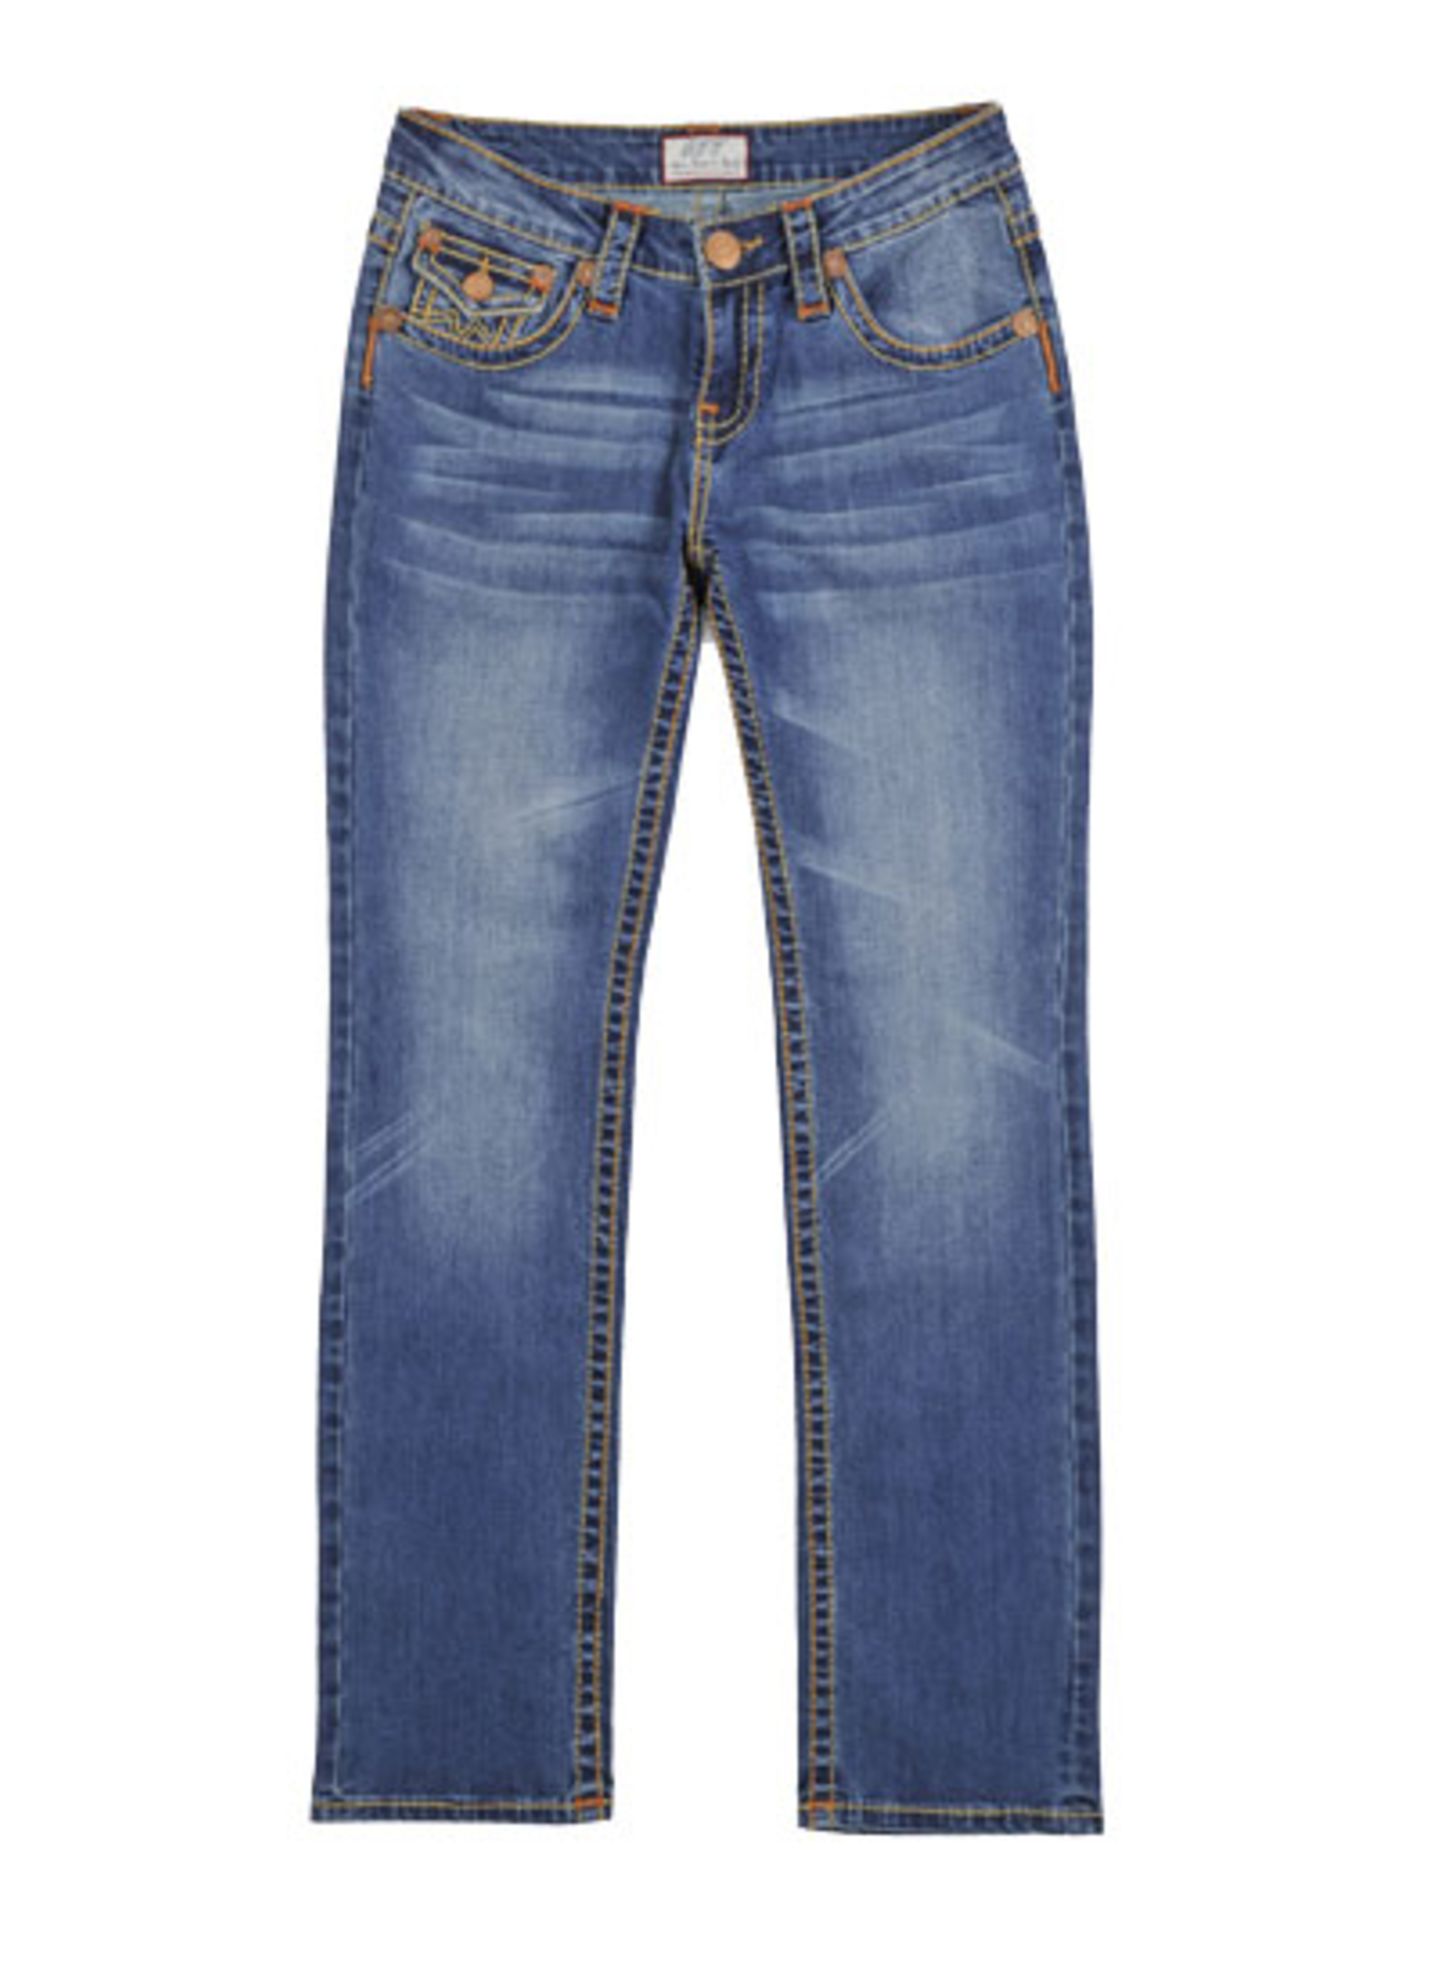 Jeans mit farbigen Nähten von Amor, Trust & Truth, um 80 Euro.